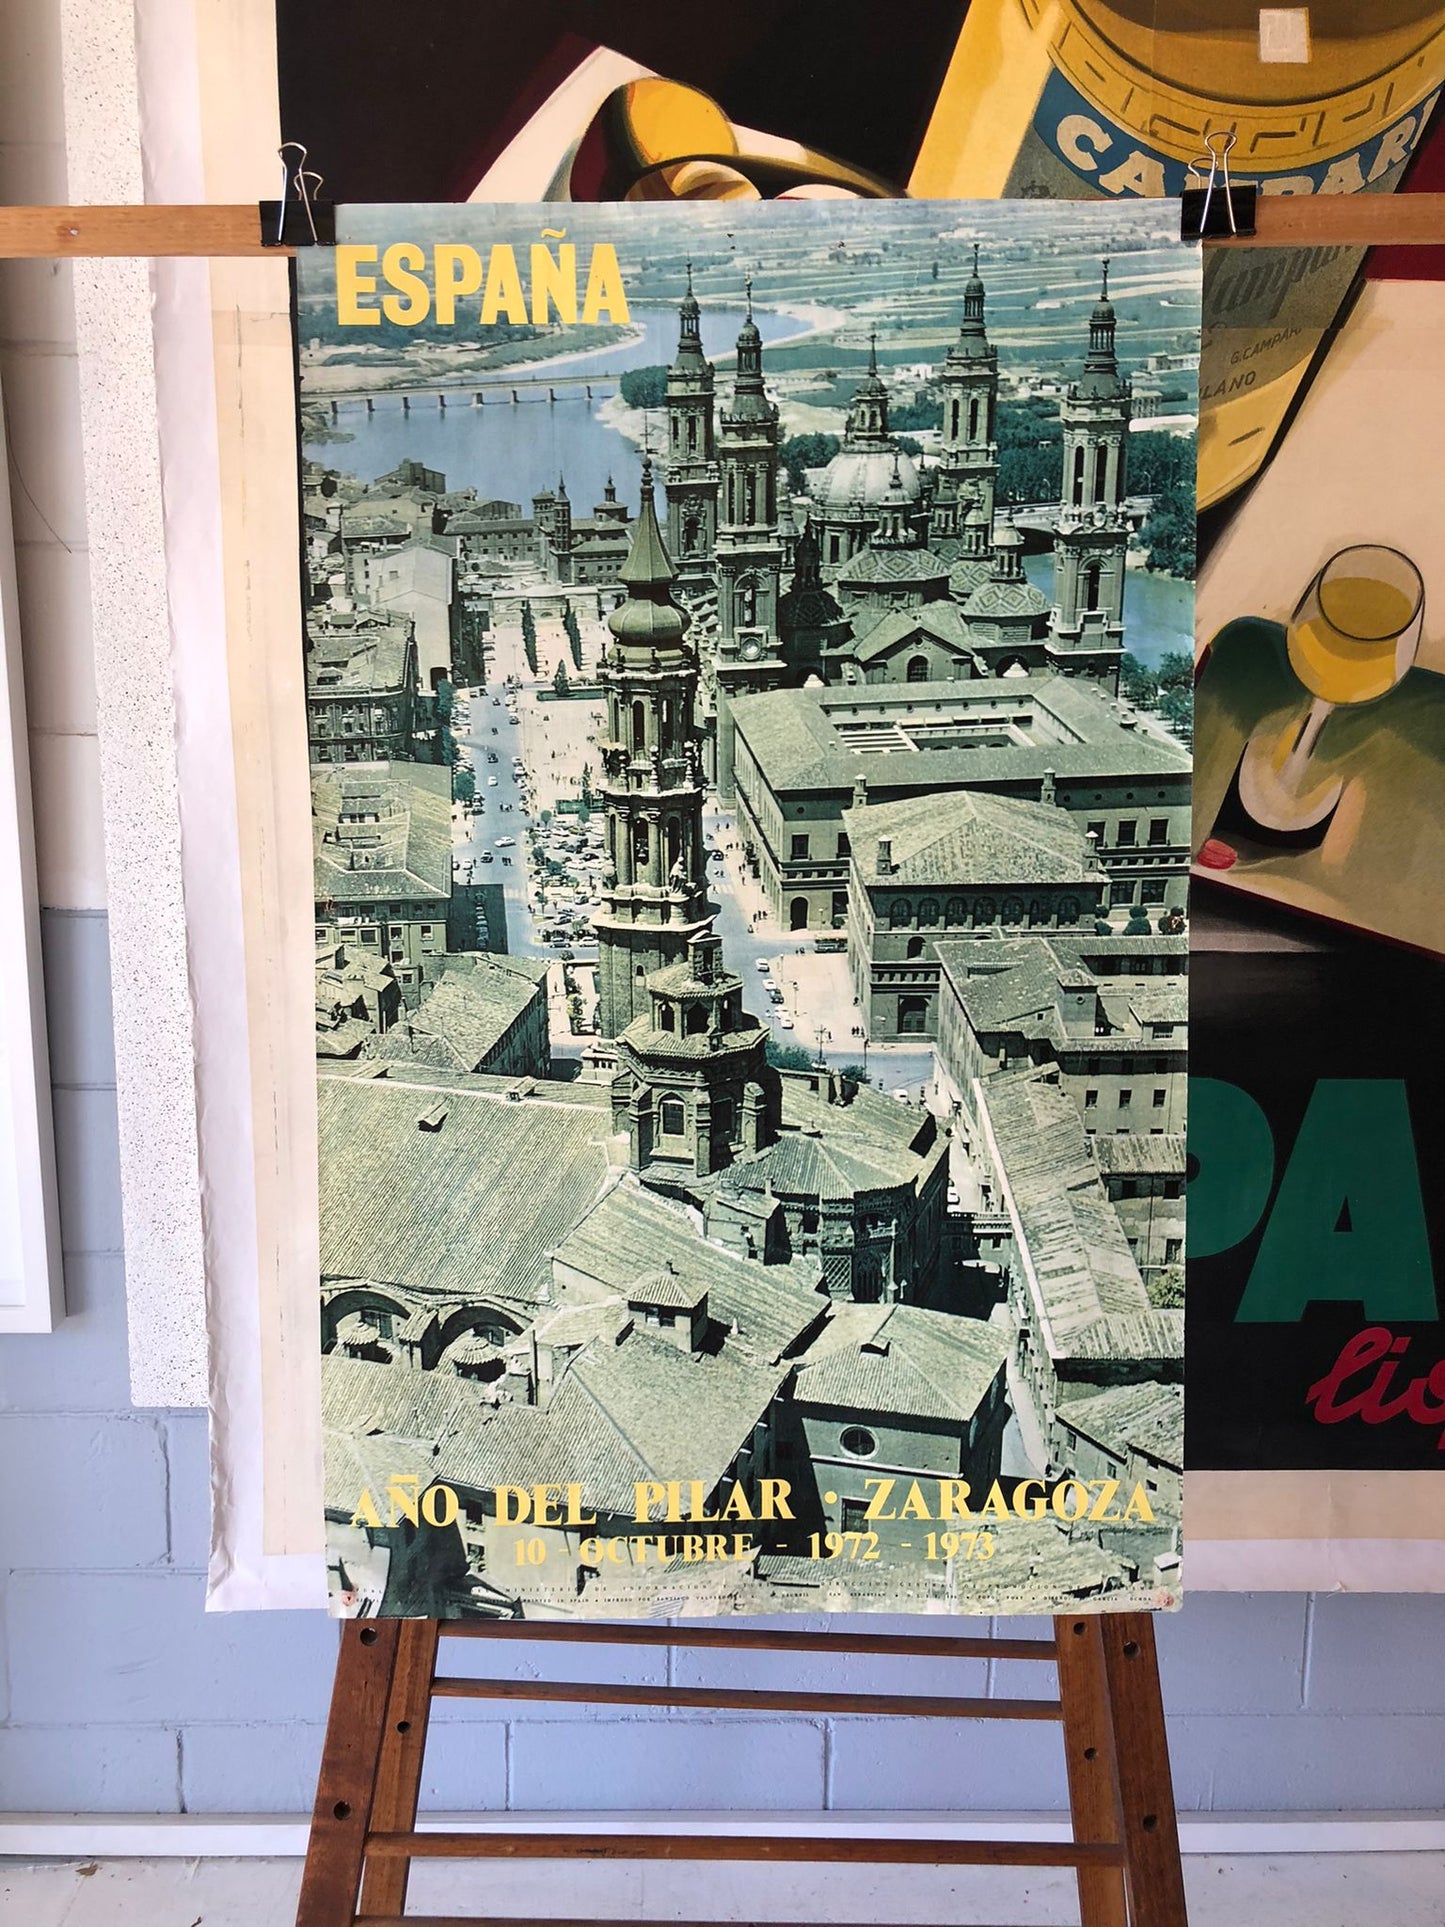 Spain "Espana" Tourism Poster